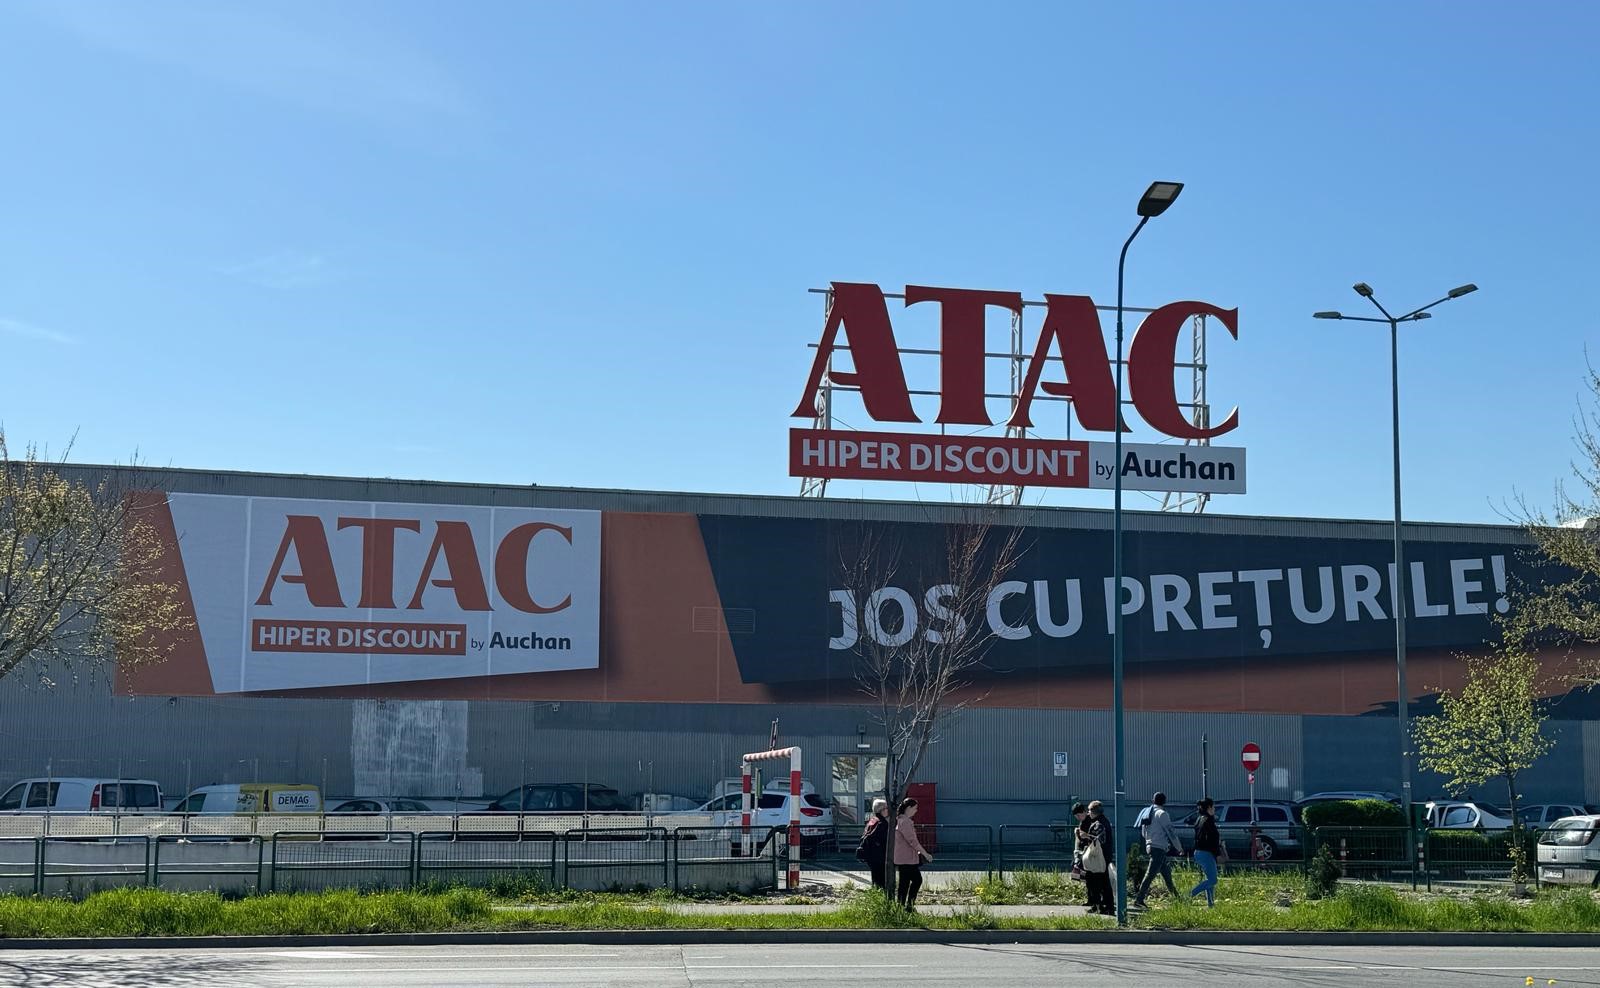 Mişcare surpriză de la Auchan: Retailerul deschide în România ATAC Hiper Discount, un nou brand de hipermarketuri unde plăteşti mai puţin în funcţie de câte produse cumperi